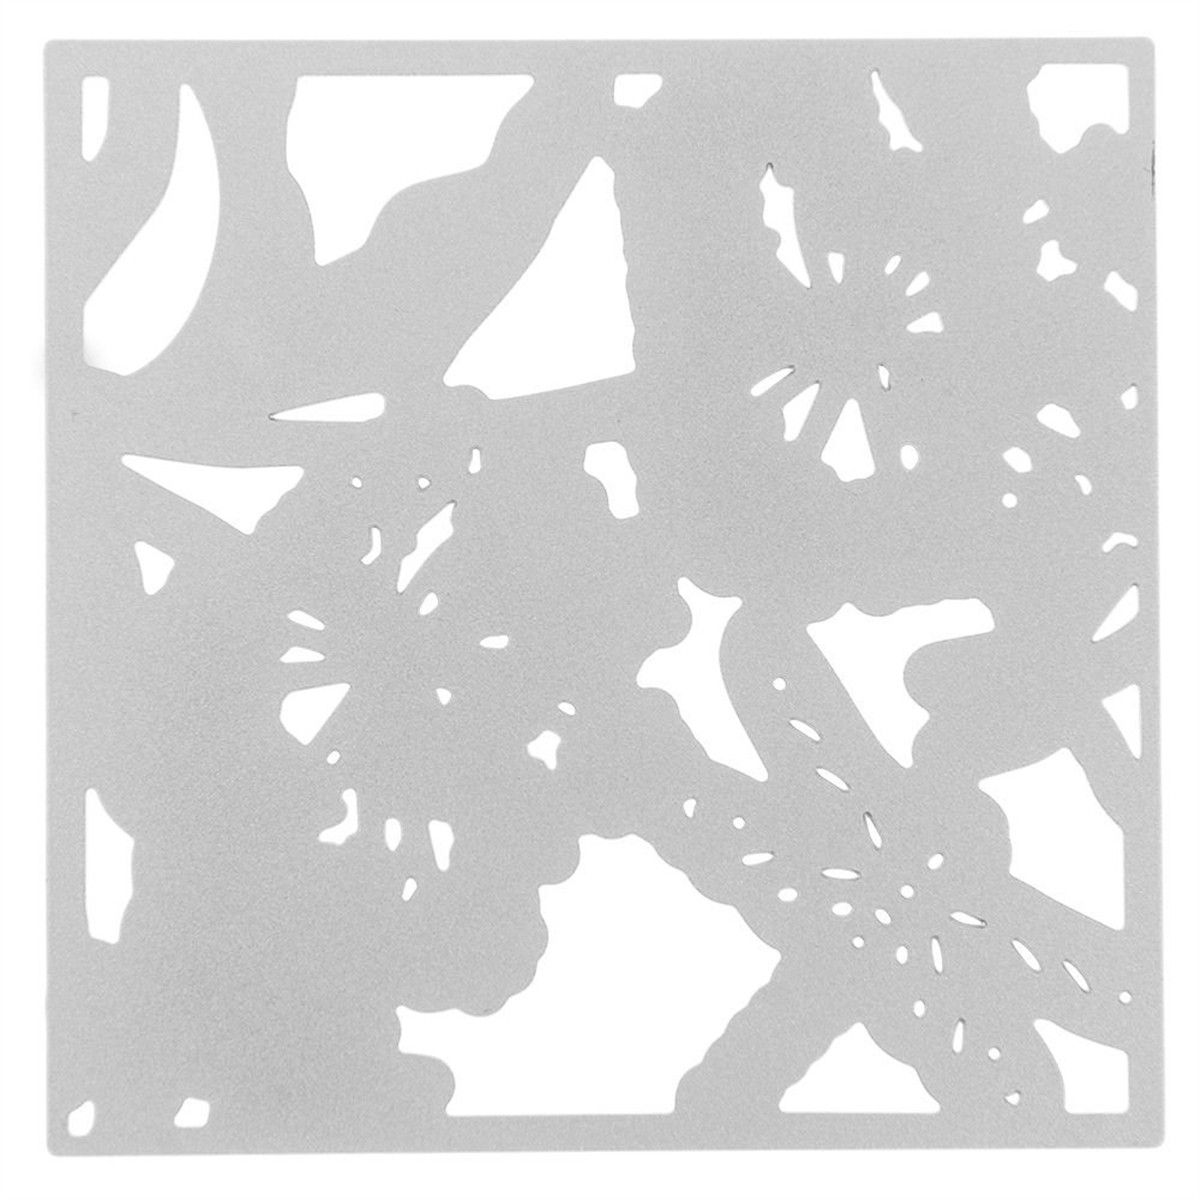 Flower-Dragonfly-Cutting-Dies-Stencil-DIY-Scrapbook-Photo-Album-Cards-Paper-Decor-Craft-1382055